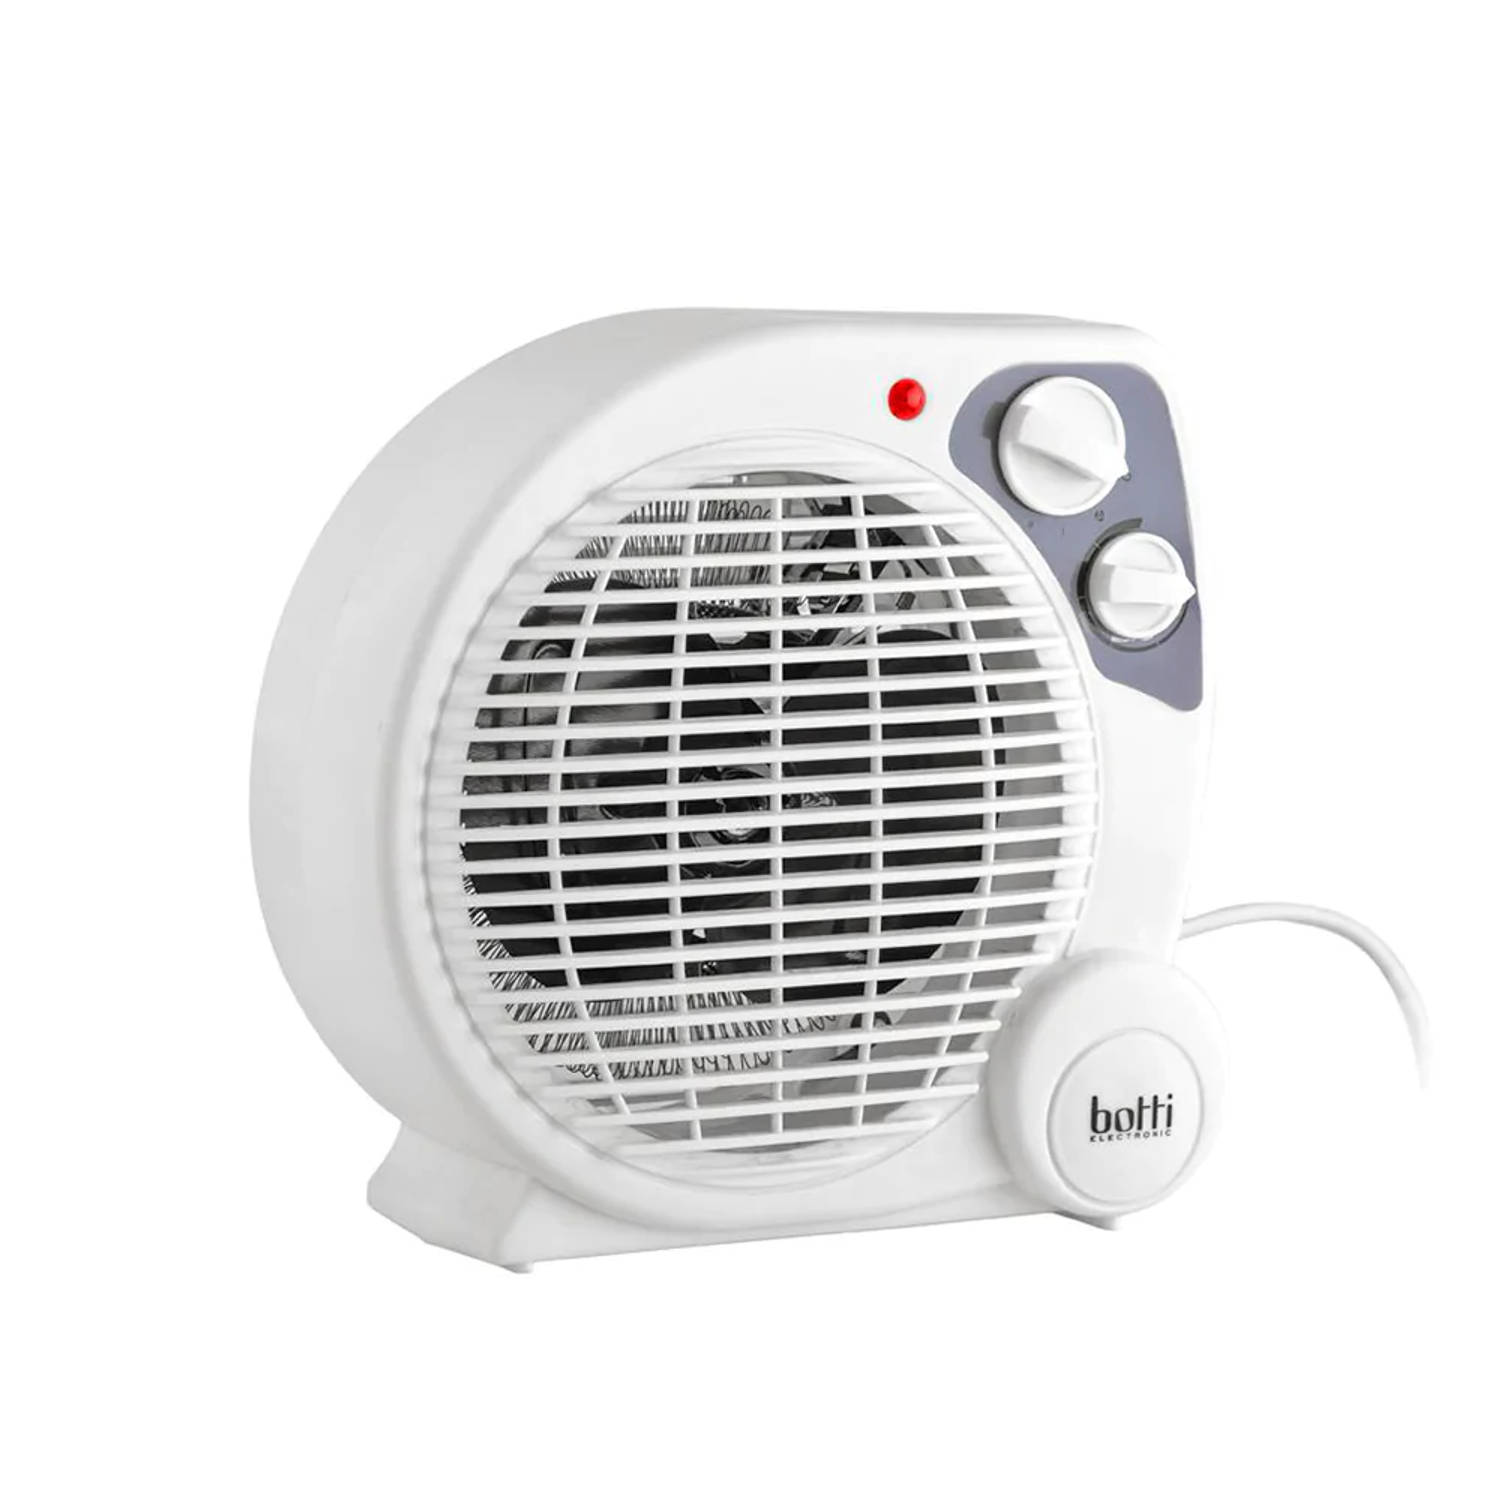 Botti Caldo ventilatorkachel 3 standen voor koud en warm elektrische kachel heater 2000W wit